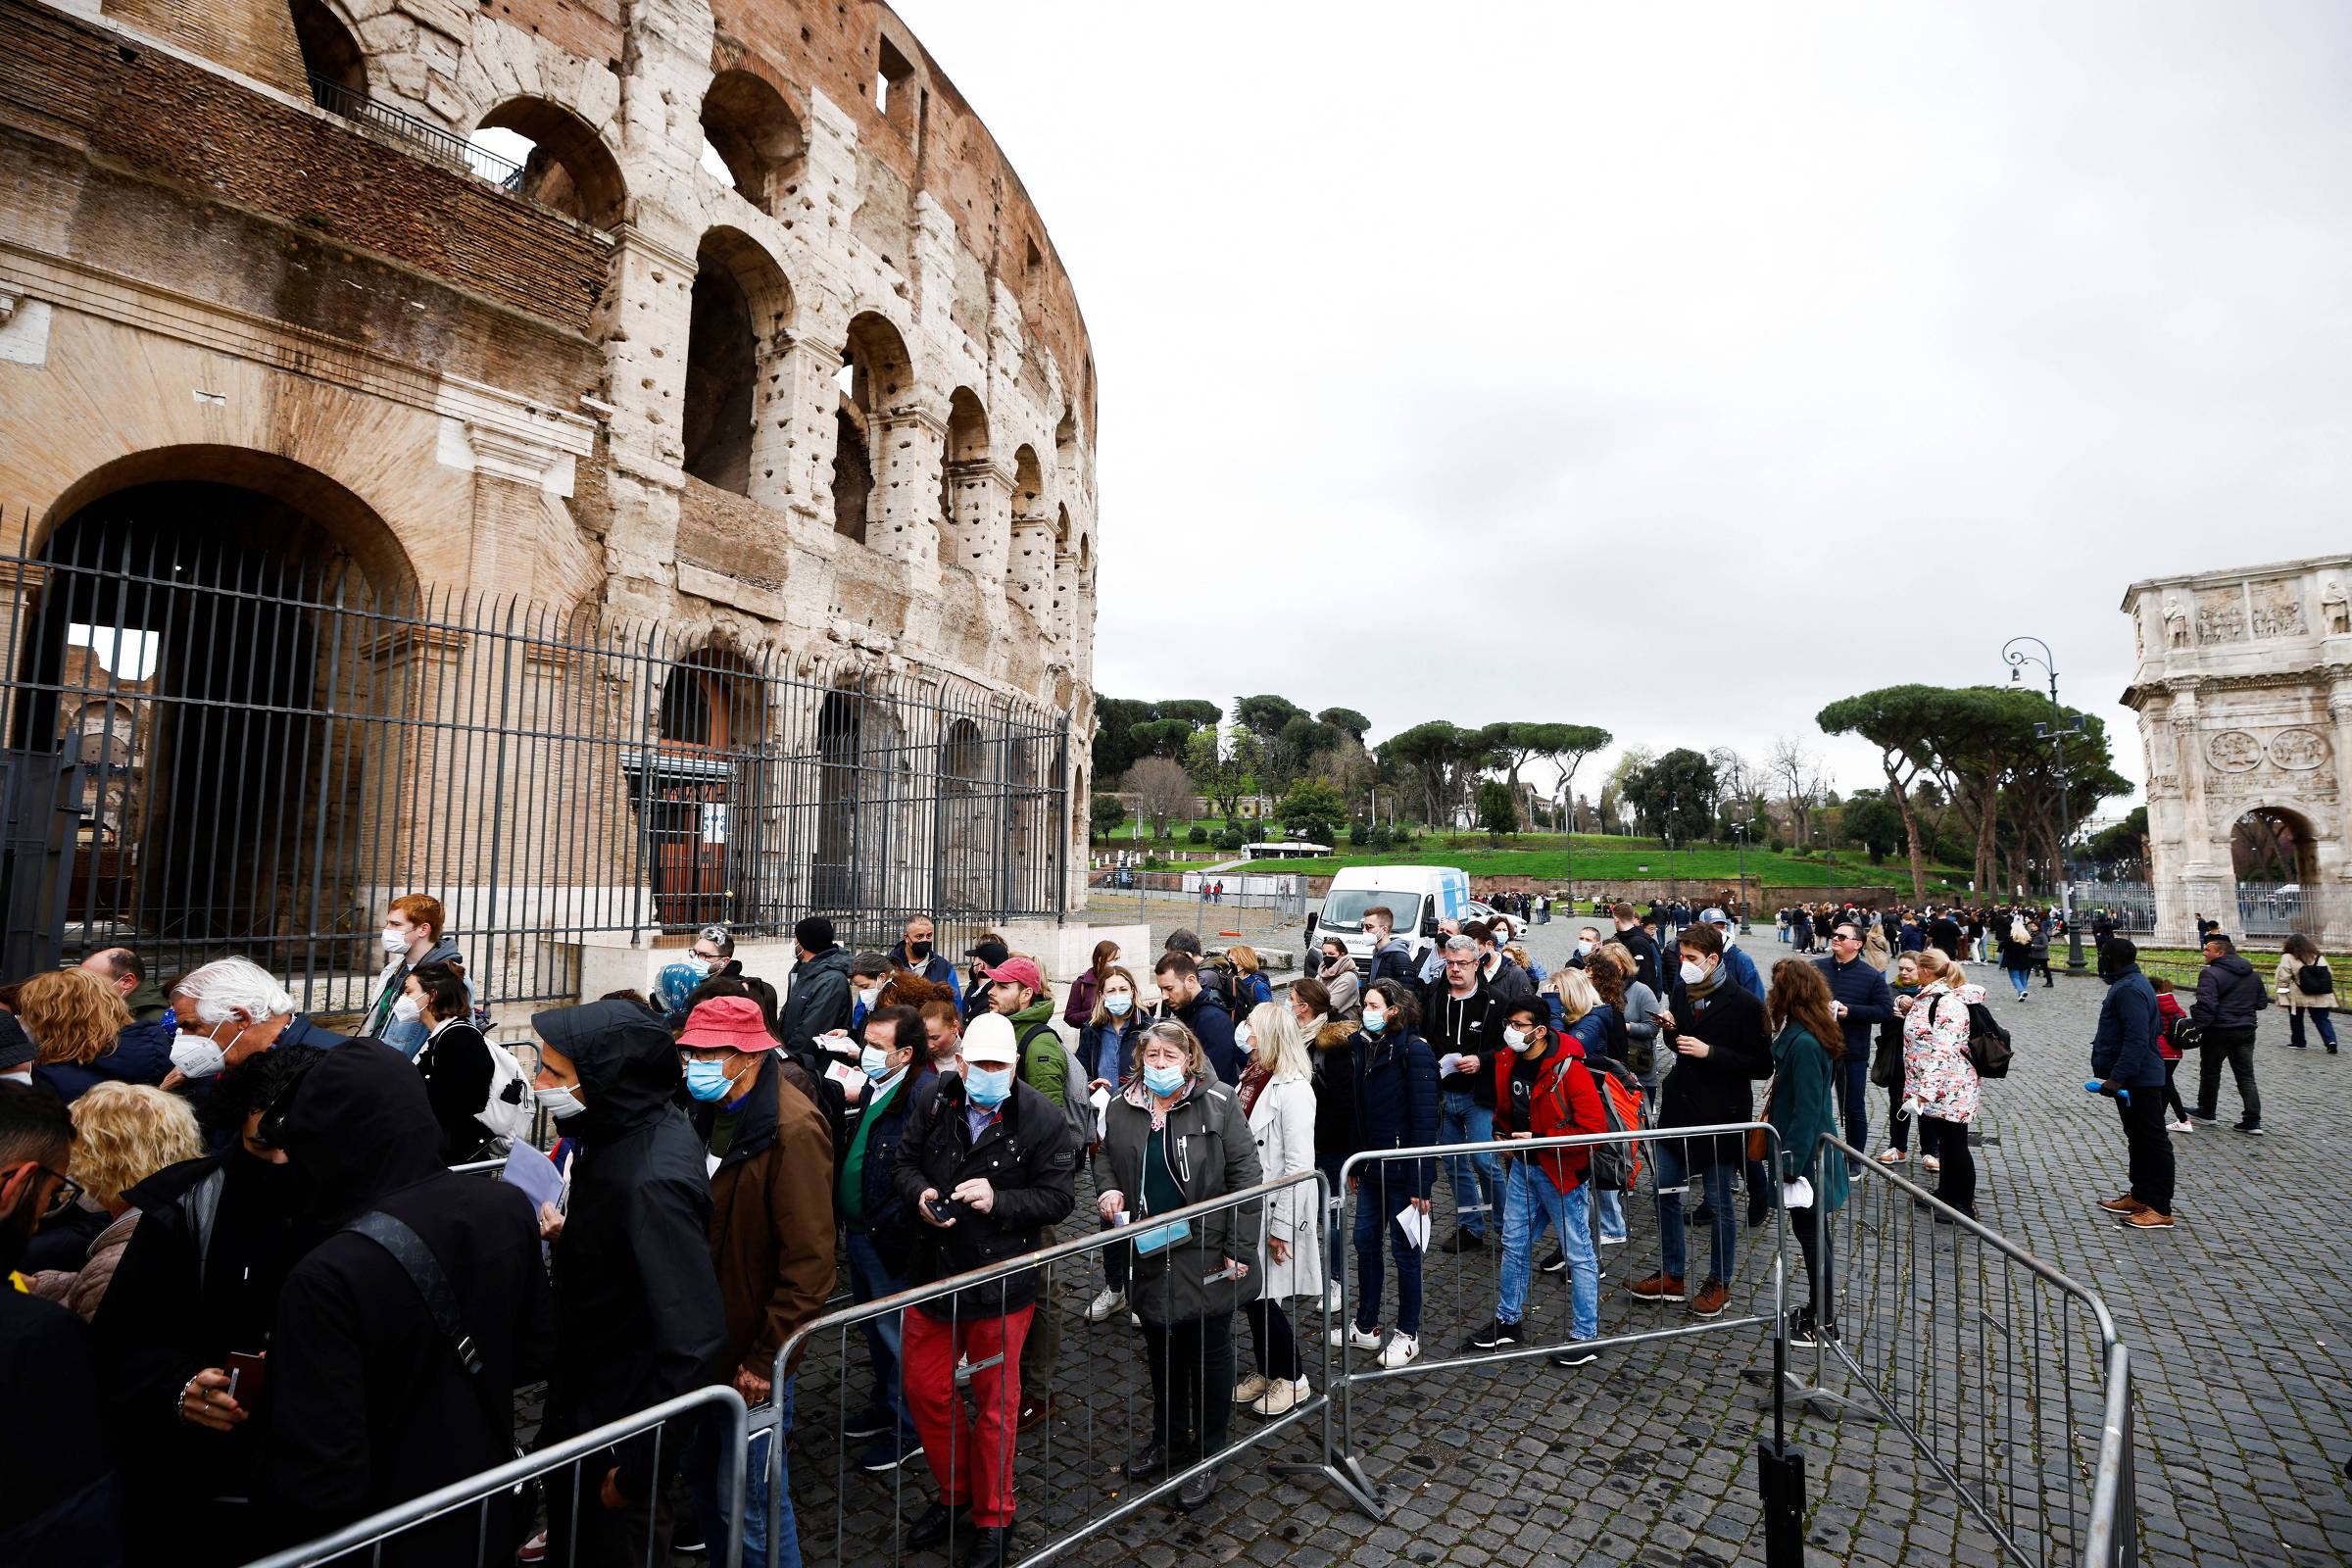 Turismo na Itália: veja dicas para fugir de multidões - 10/07/2023 -  Turismo - Folha